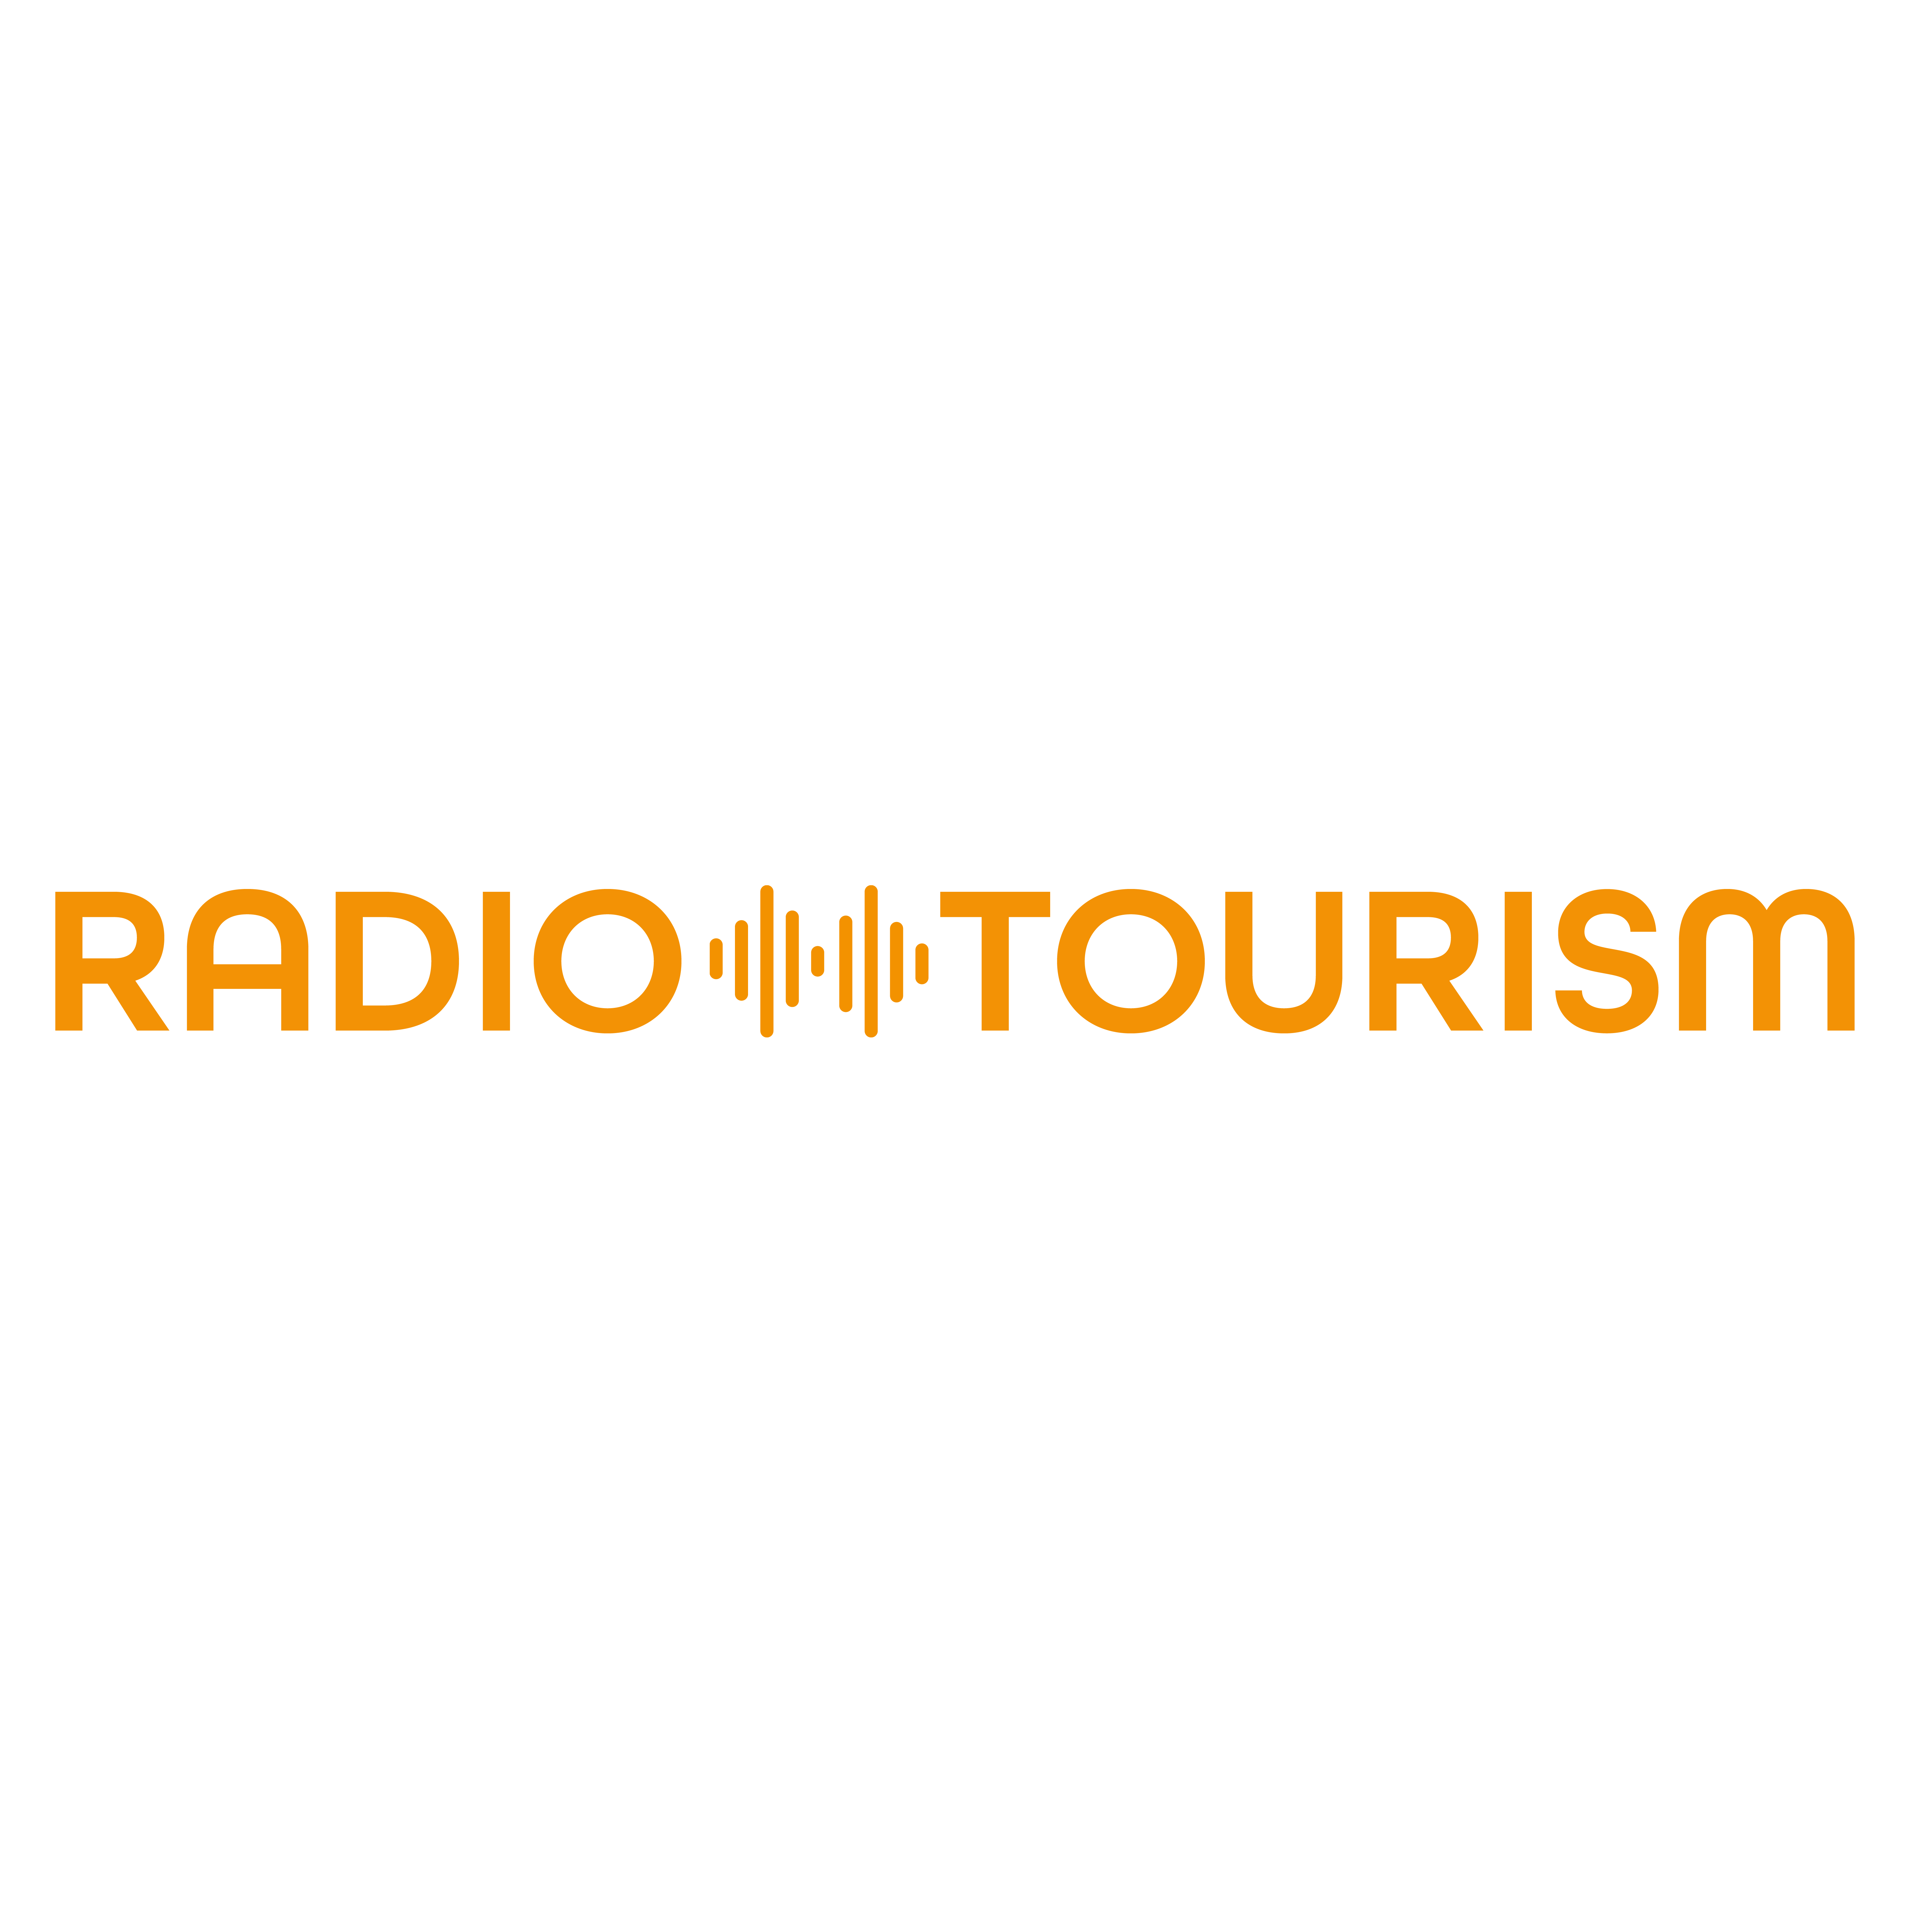 RADIO TOURISM fokussiert voll und ganz auf audiovisuelle Inhalte und Hörfunkaktivitäten aller Art für touristische Marken und Unternehmen. Das Kundenspektrum reicht dabei von Destinationen und deren Managementgesellschaften oder Repräsentanzen über Reisev